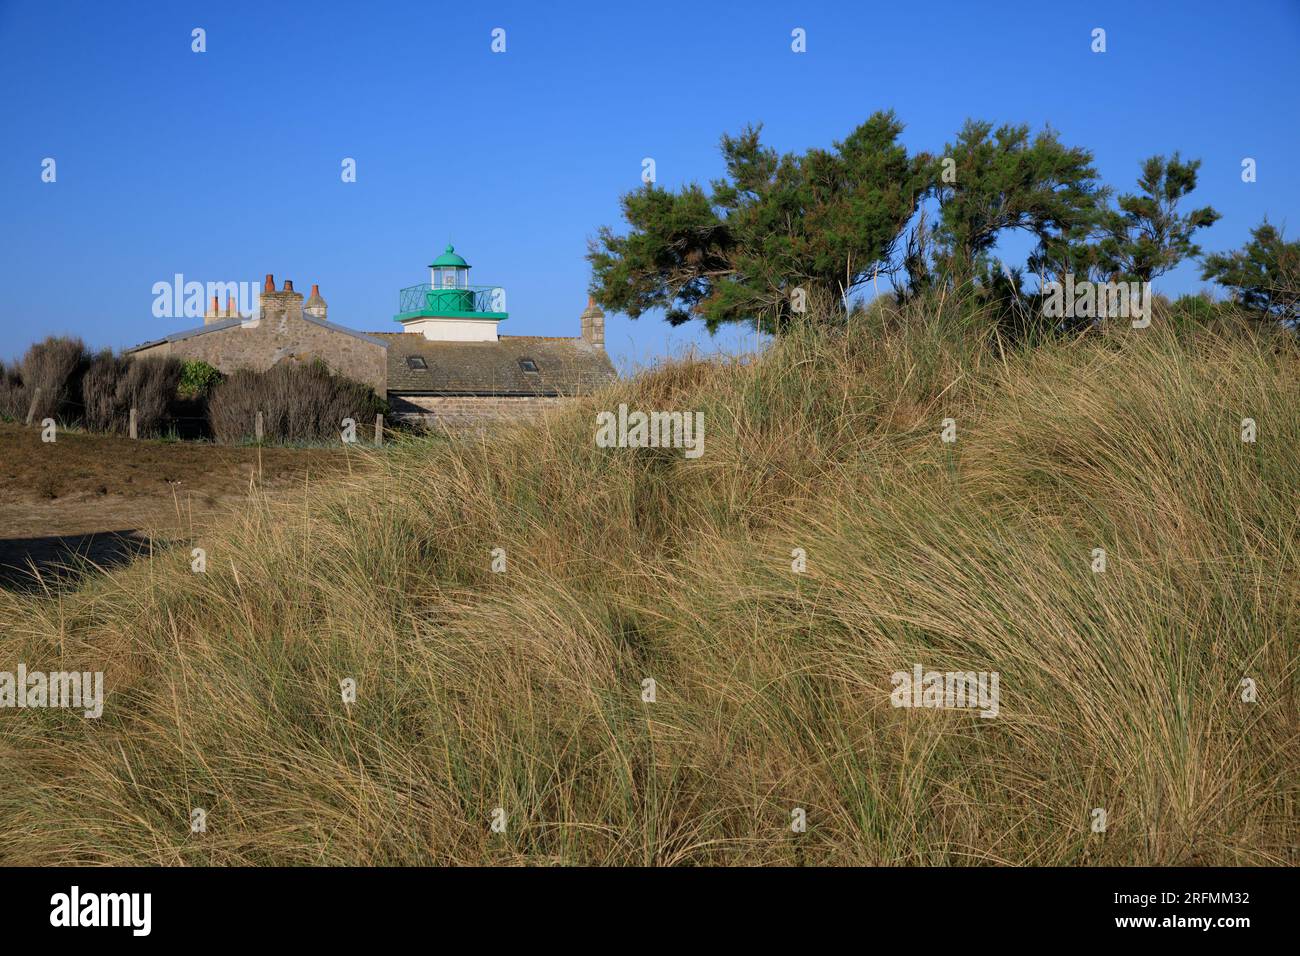 France, Normandy region, Manche department, Val de Saire, Réville, Pointe de Saire, plage de Jonville (beach), Réville lighthouse Stock Photo